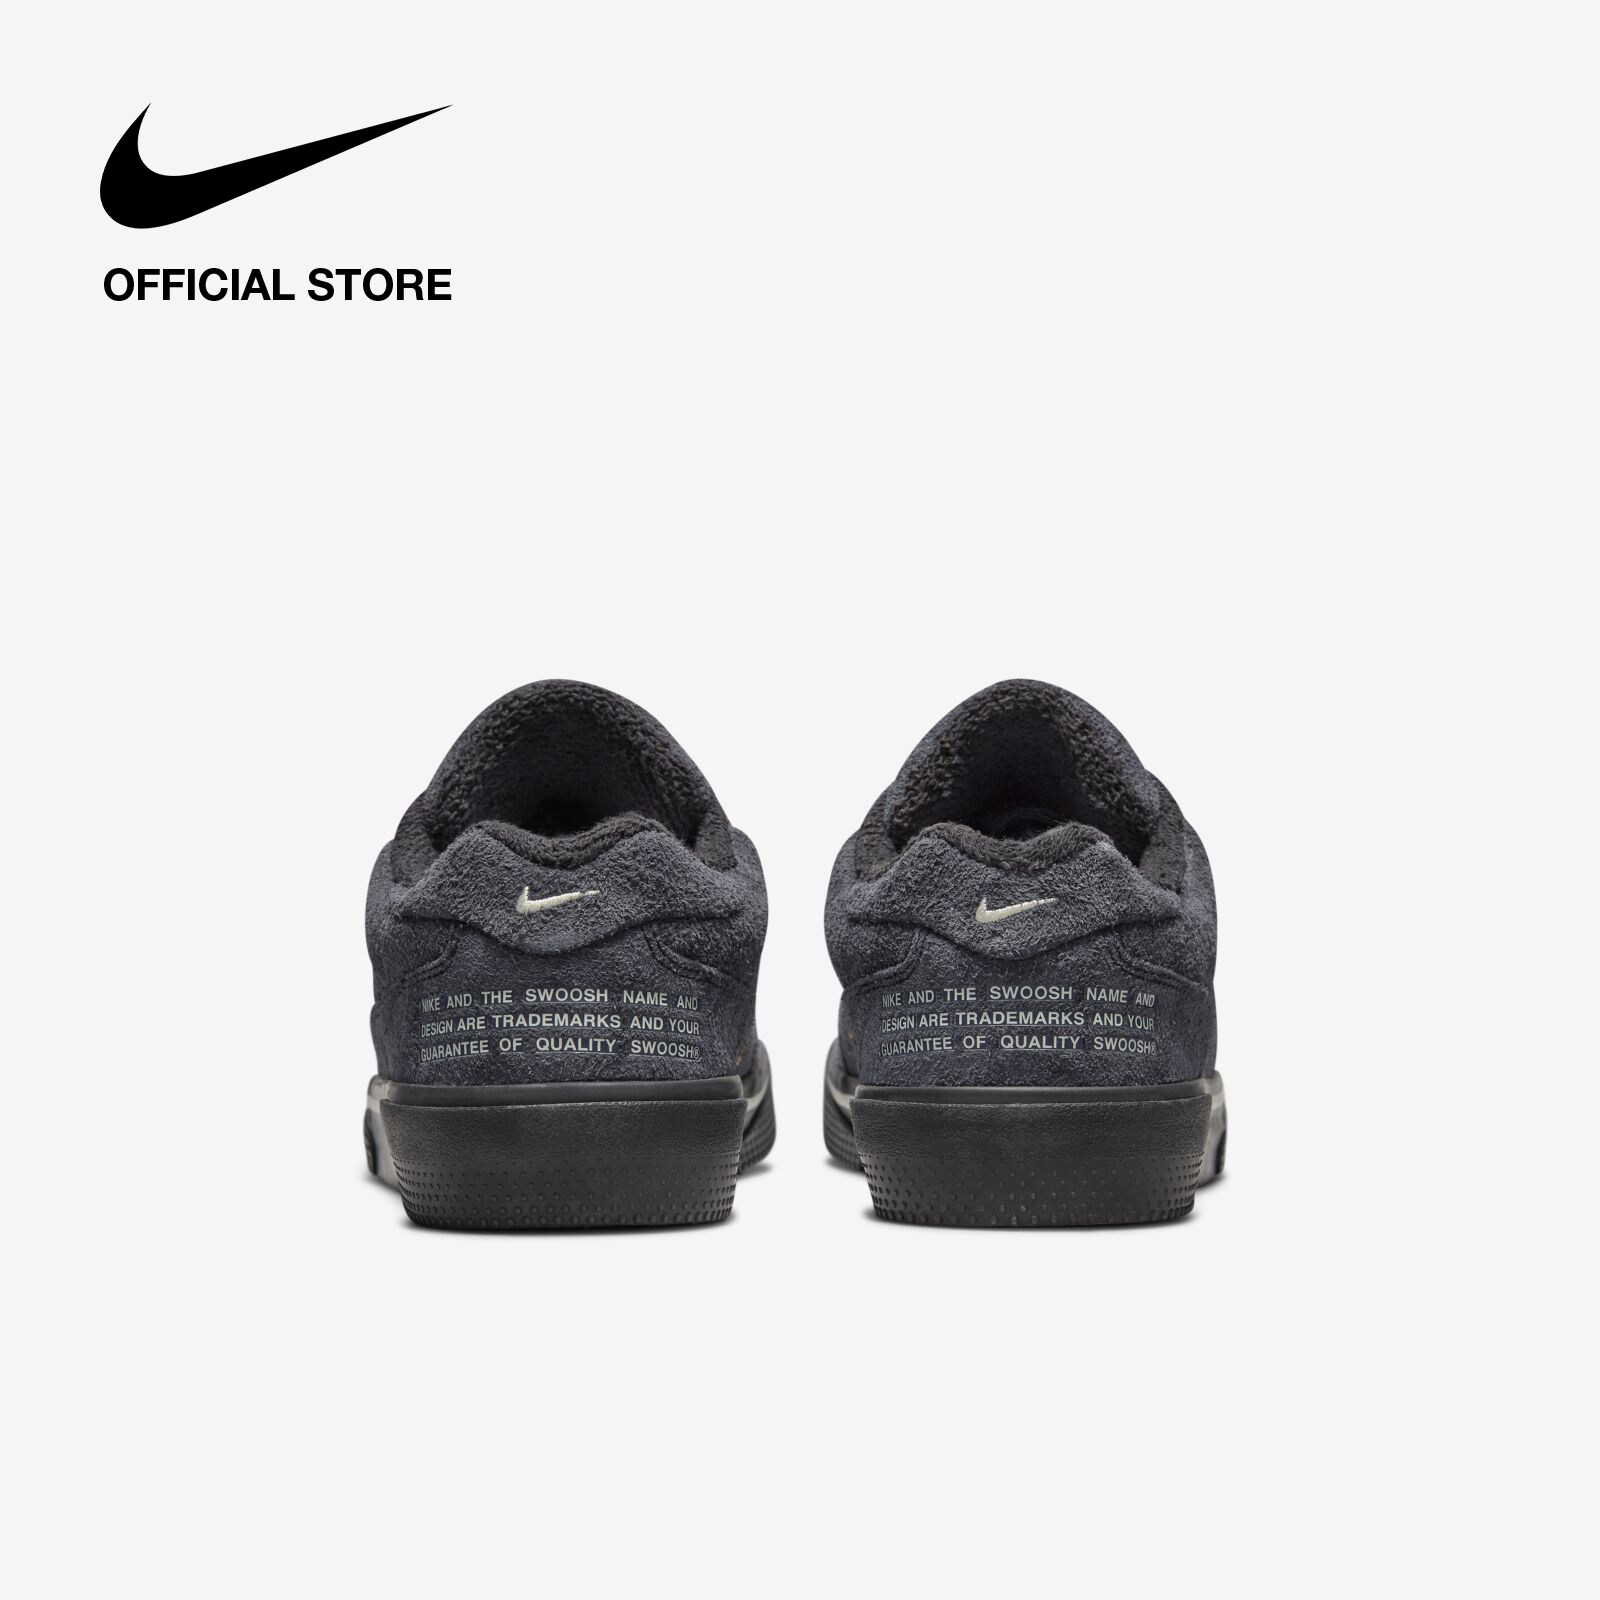 Nike Men's GTS 97 Shoes - Black รองเท้าผู้ชาย Nike GTS 97 - สีดำ